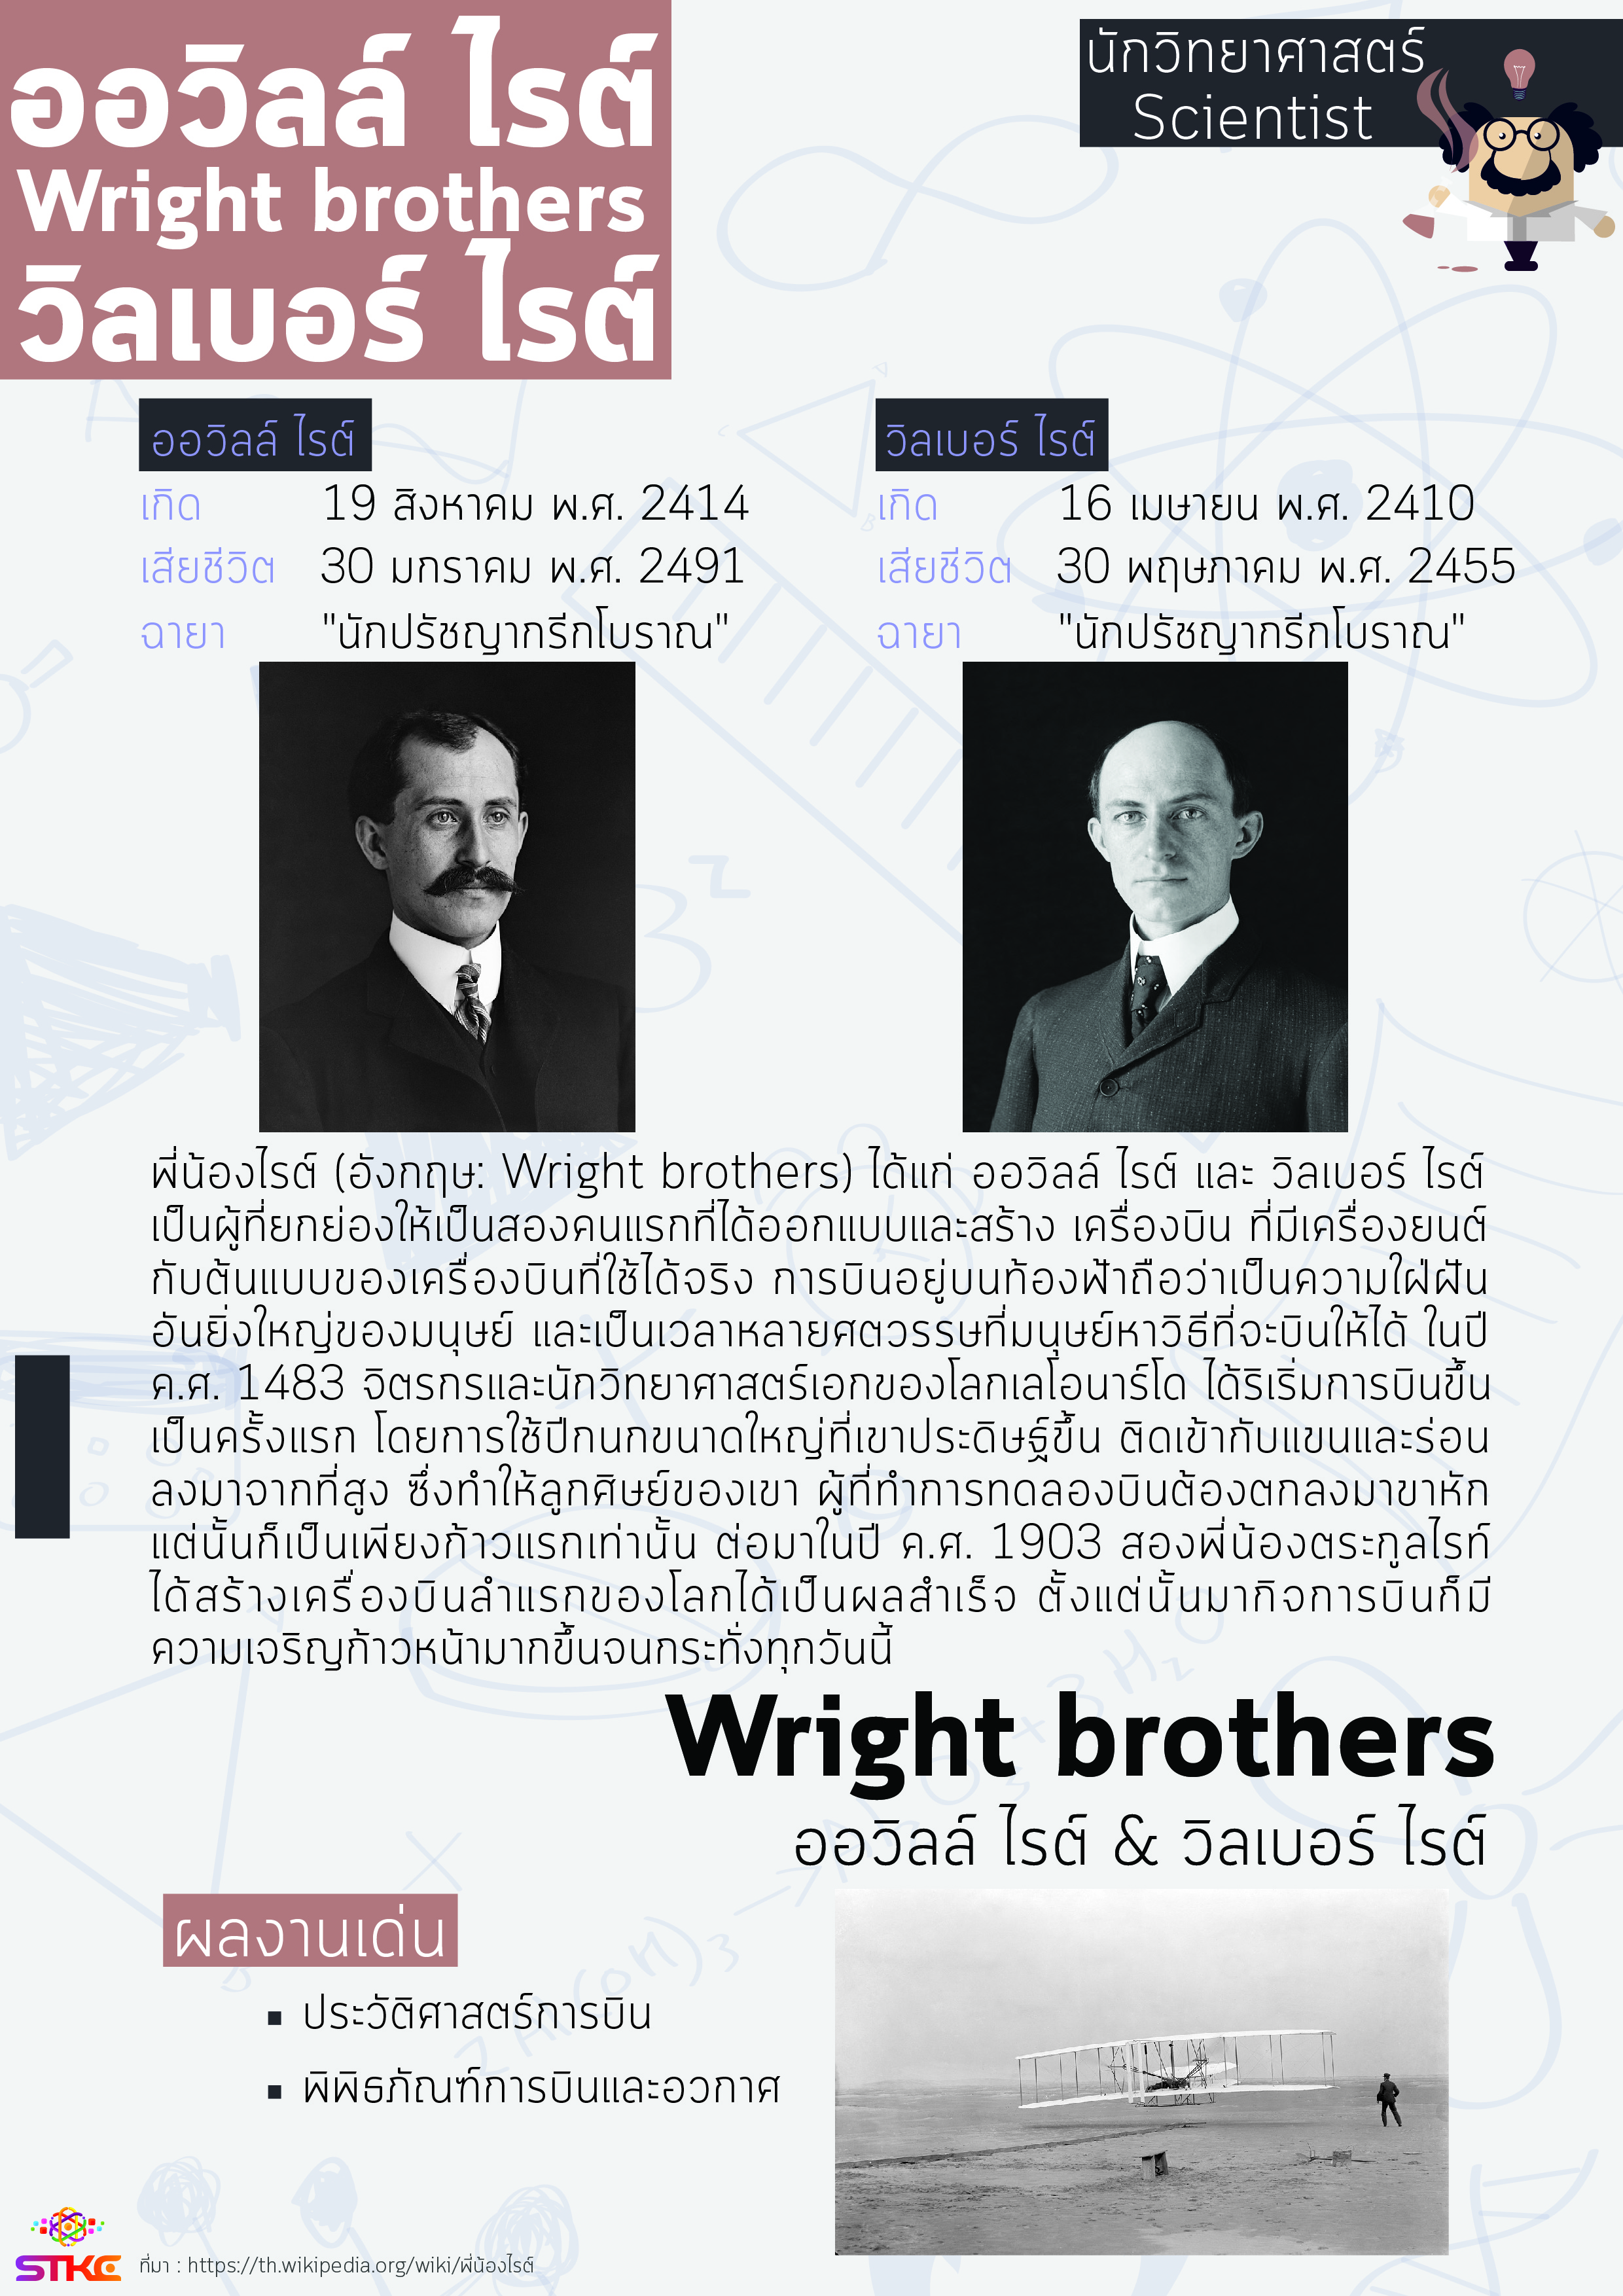 นักวิทยาศาสตร์ พี่น้องไรต์ (Wright brothers)